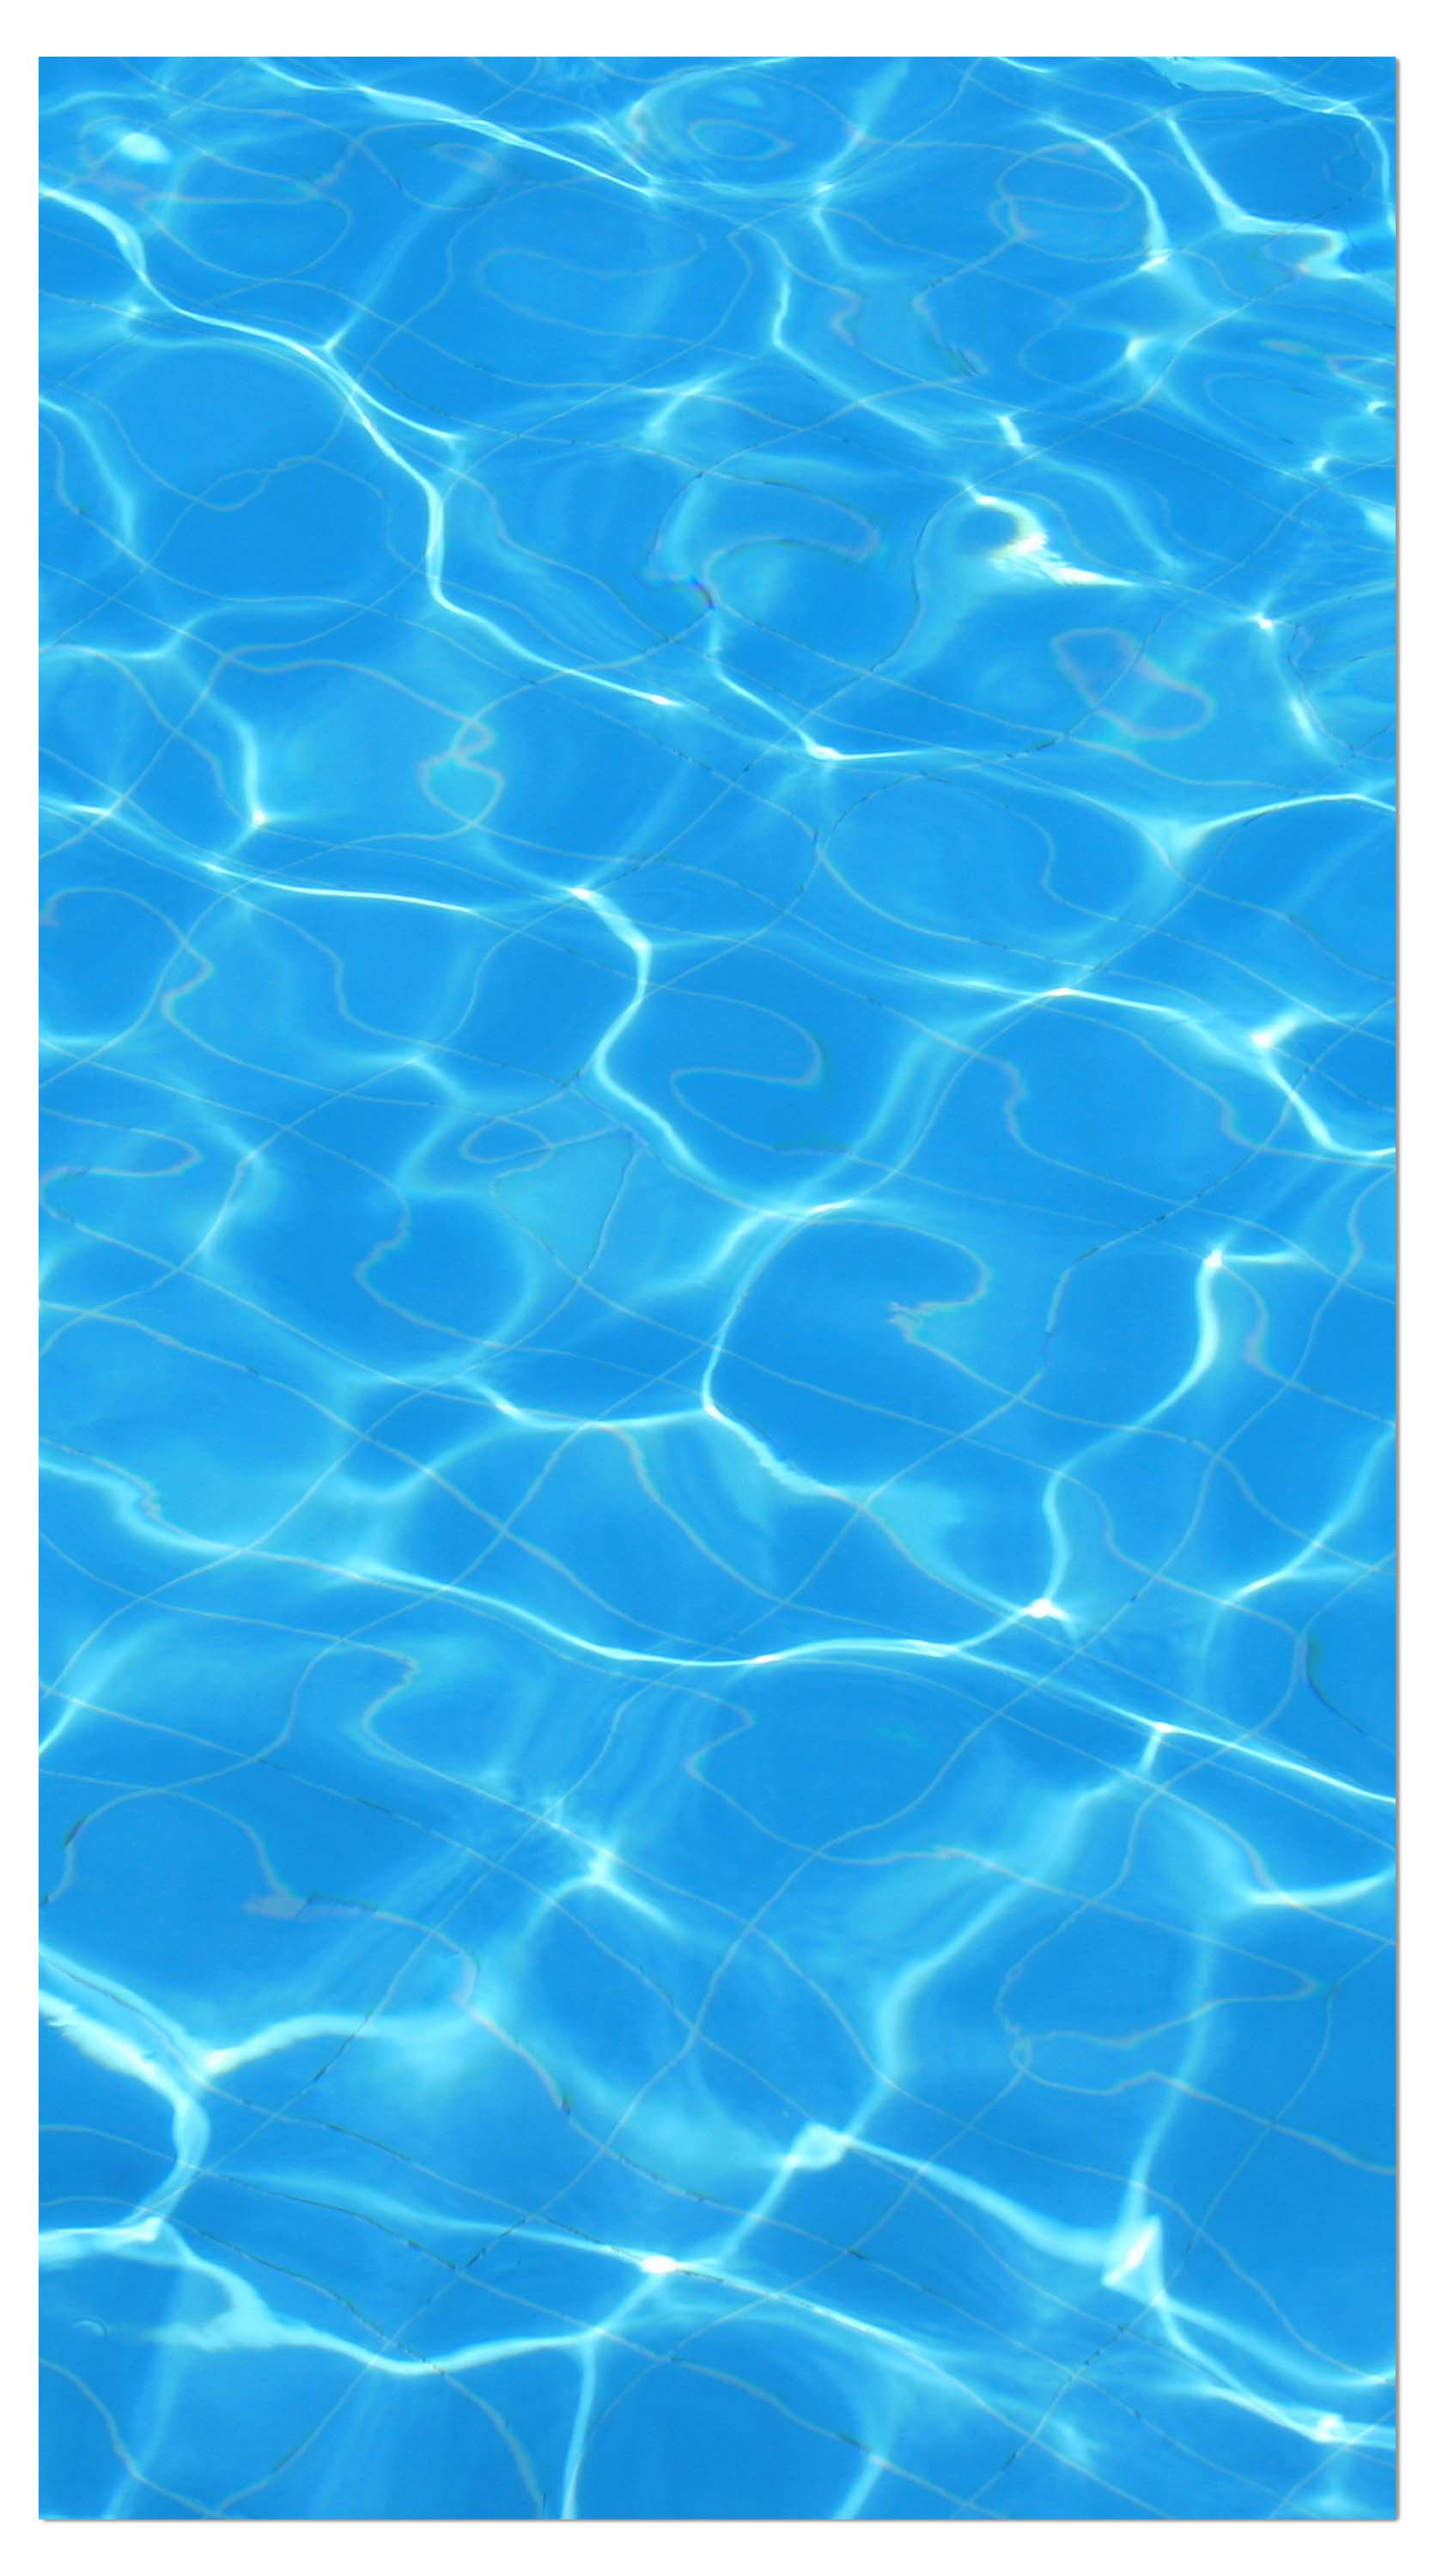 Garderobe Wasser-Pool-Lichteffekt M1010 entdecken - Bild 4